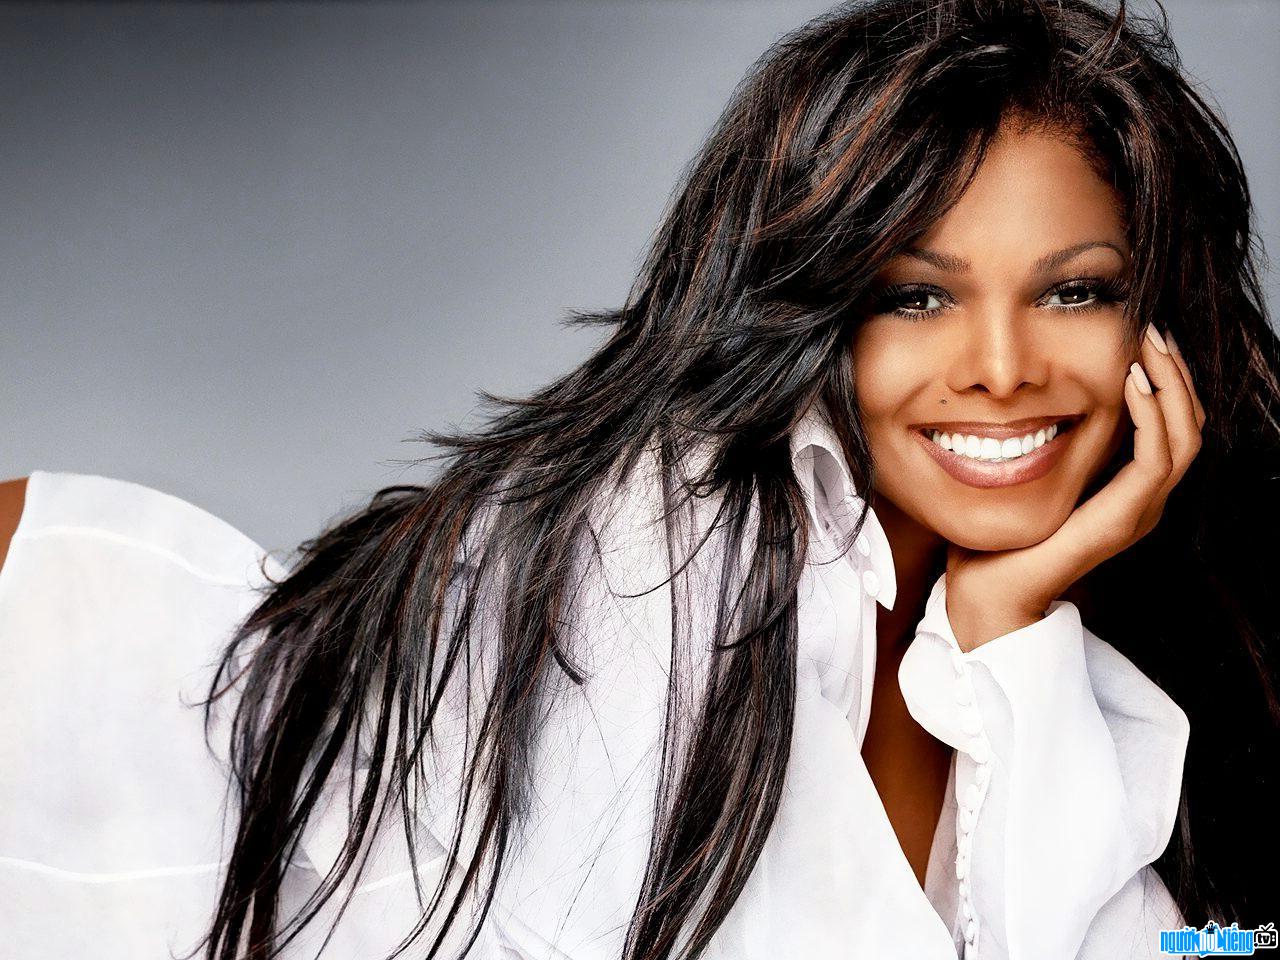 Latest image of female singer - actress Janet Jackson